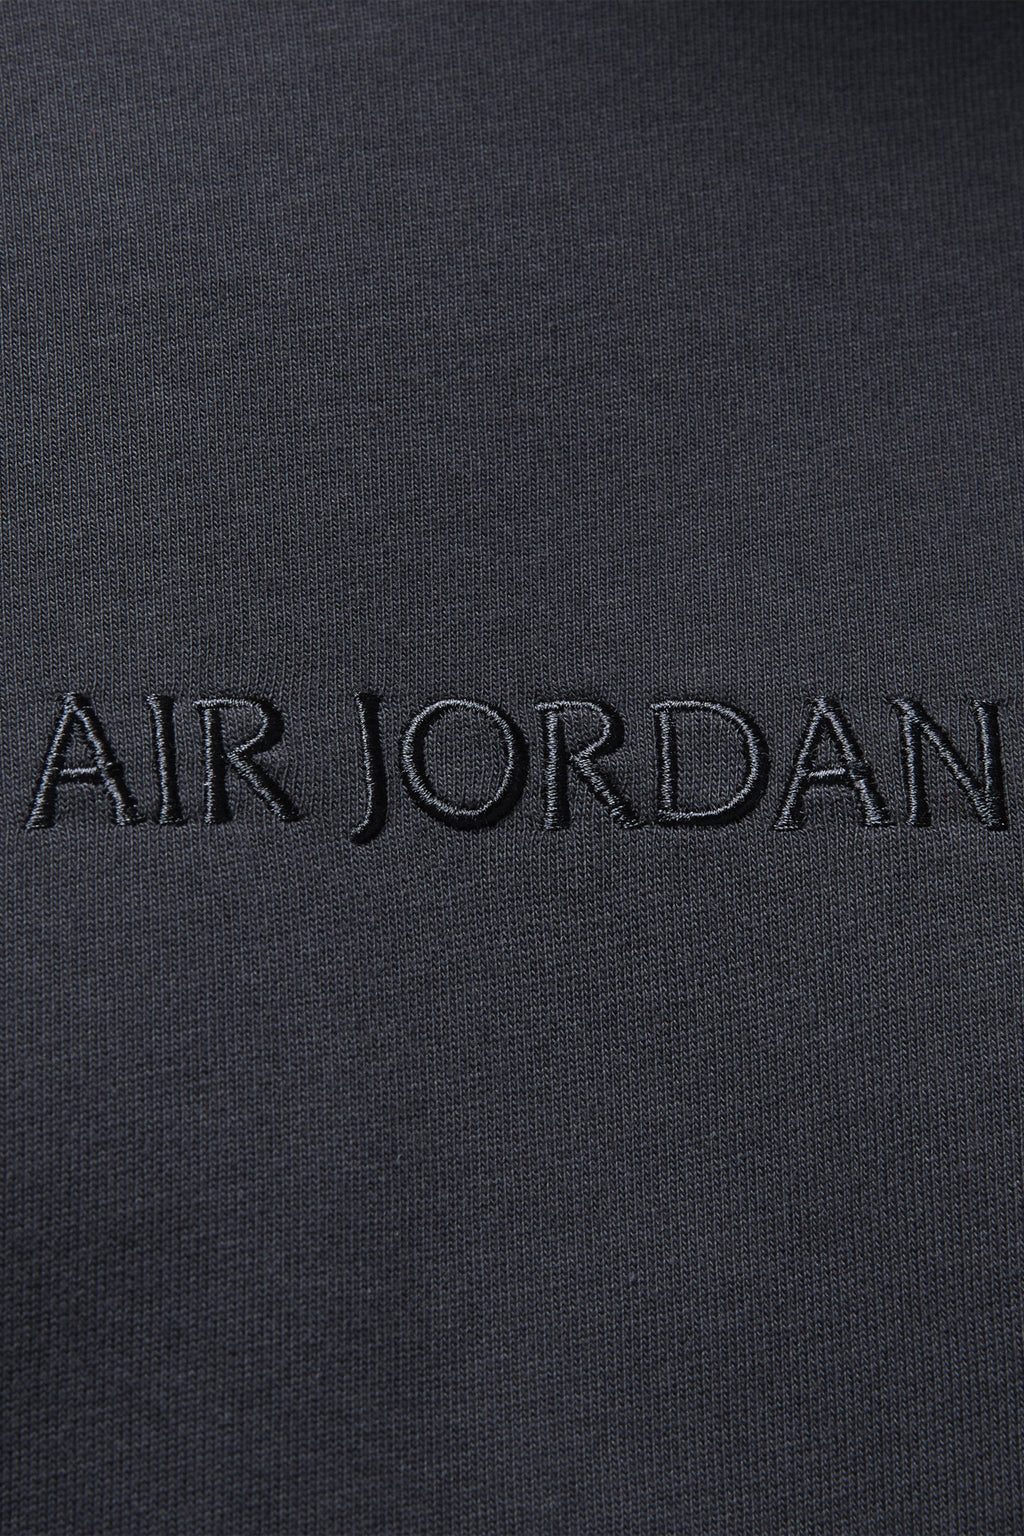 Nike Air Jordan - Wordmark T-shirt